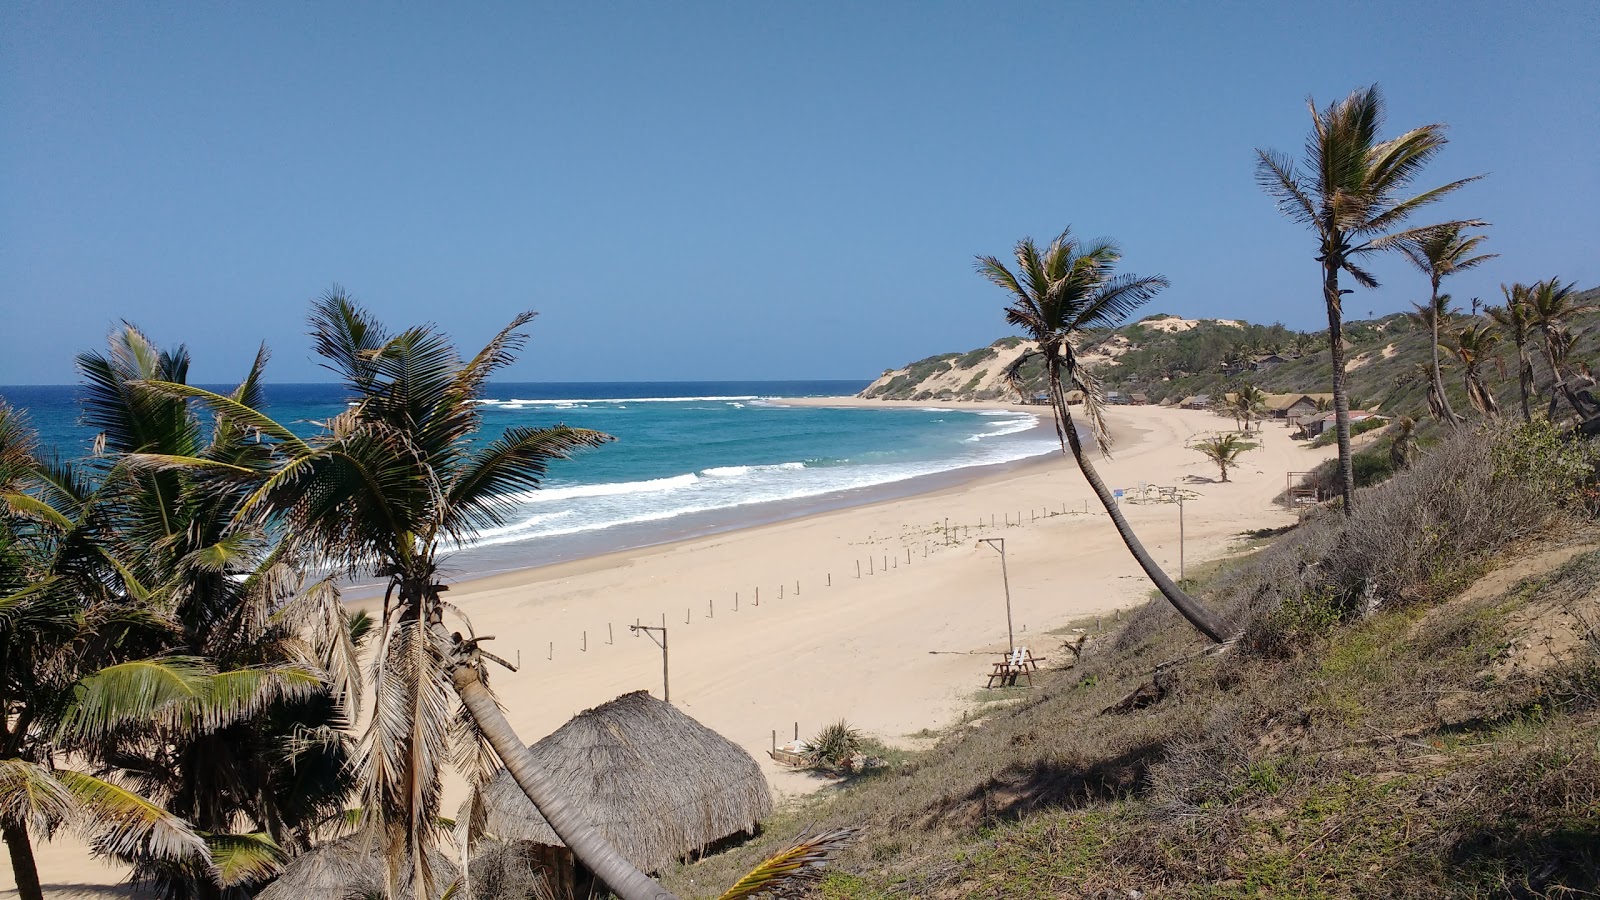 Praia de Jangamo'in fotoğrafı parlak ince kum yüzey ile